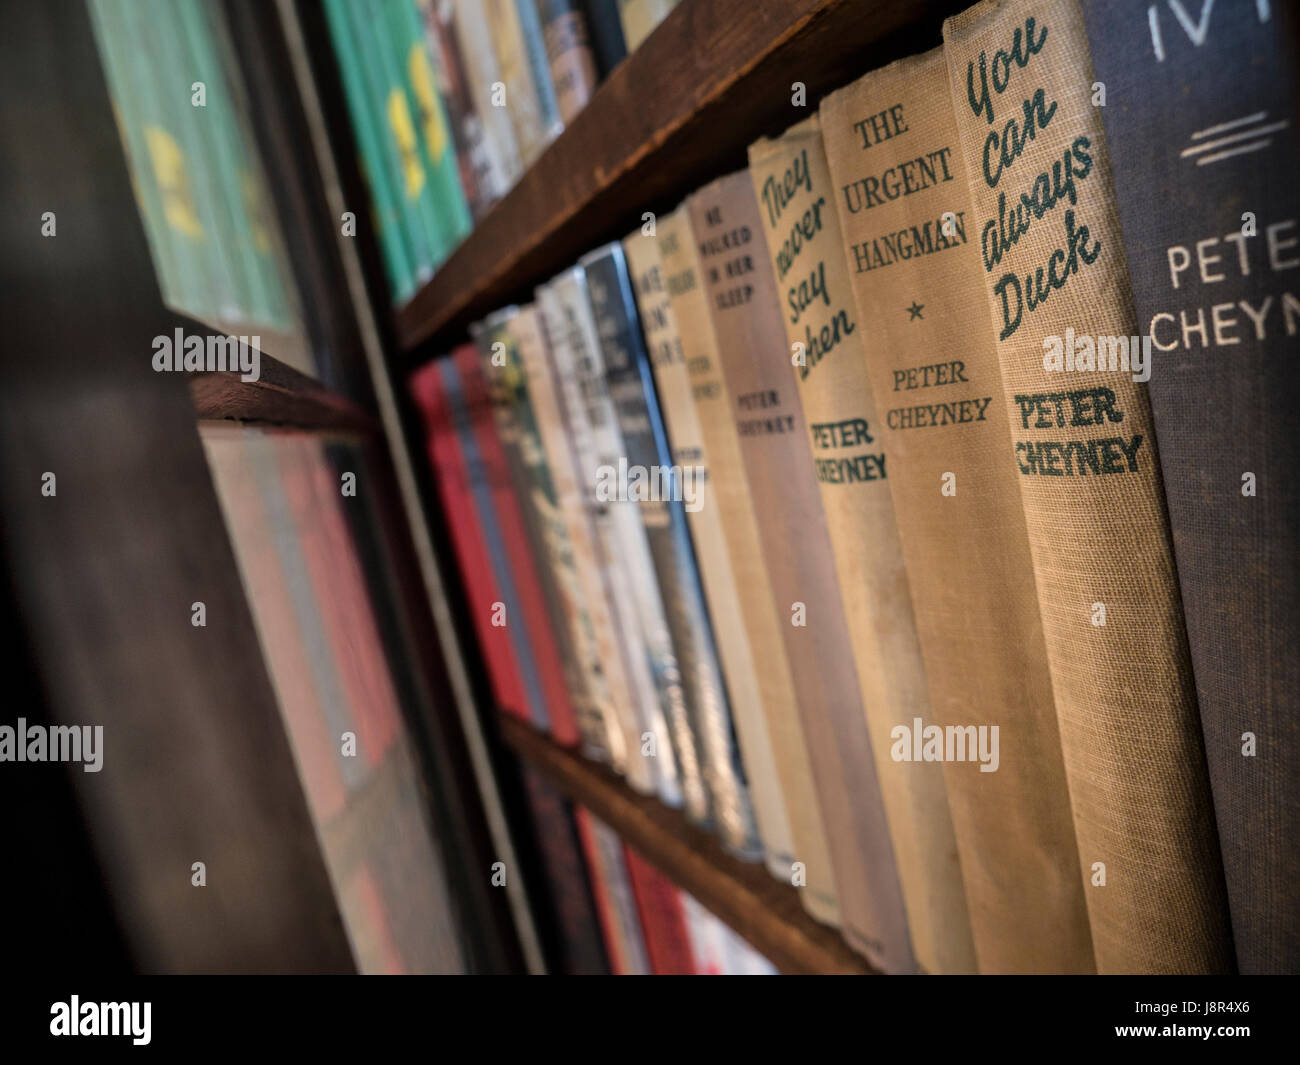 PETER CHEYNEY raccolta completa dei suoi libri in biblioteca home - British Crime scrittore di fiction 1896-1951 Foto Stock